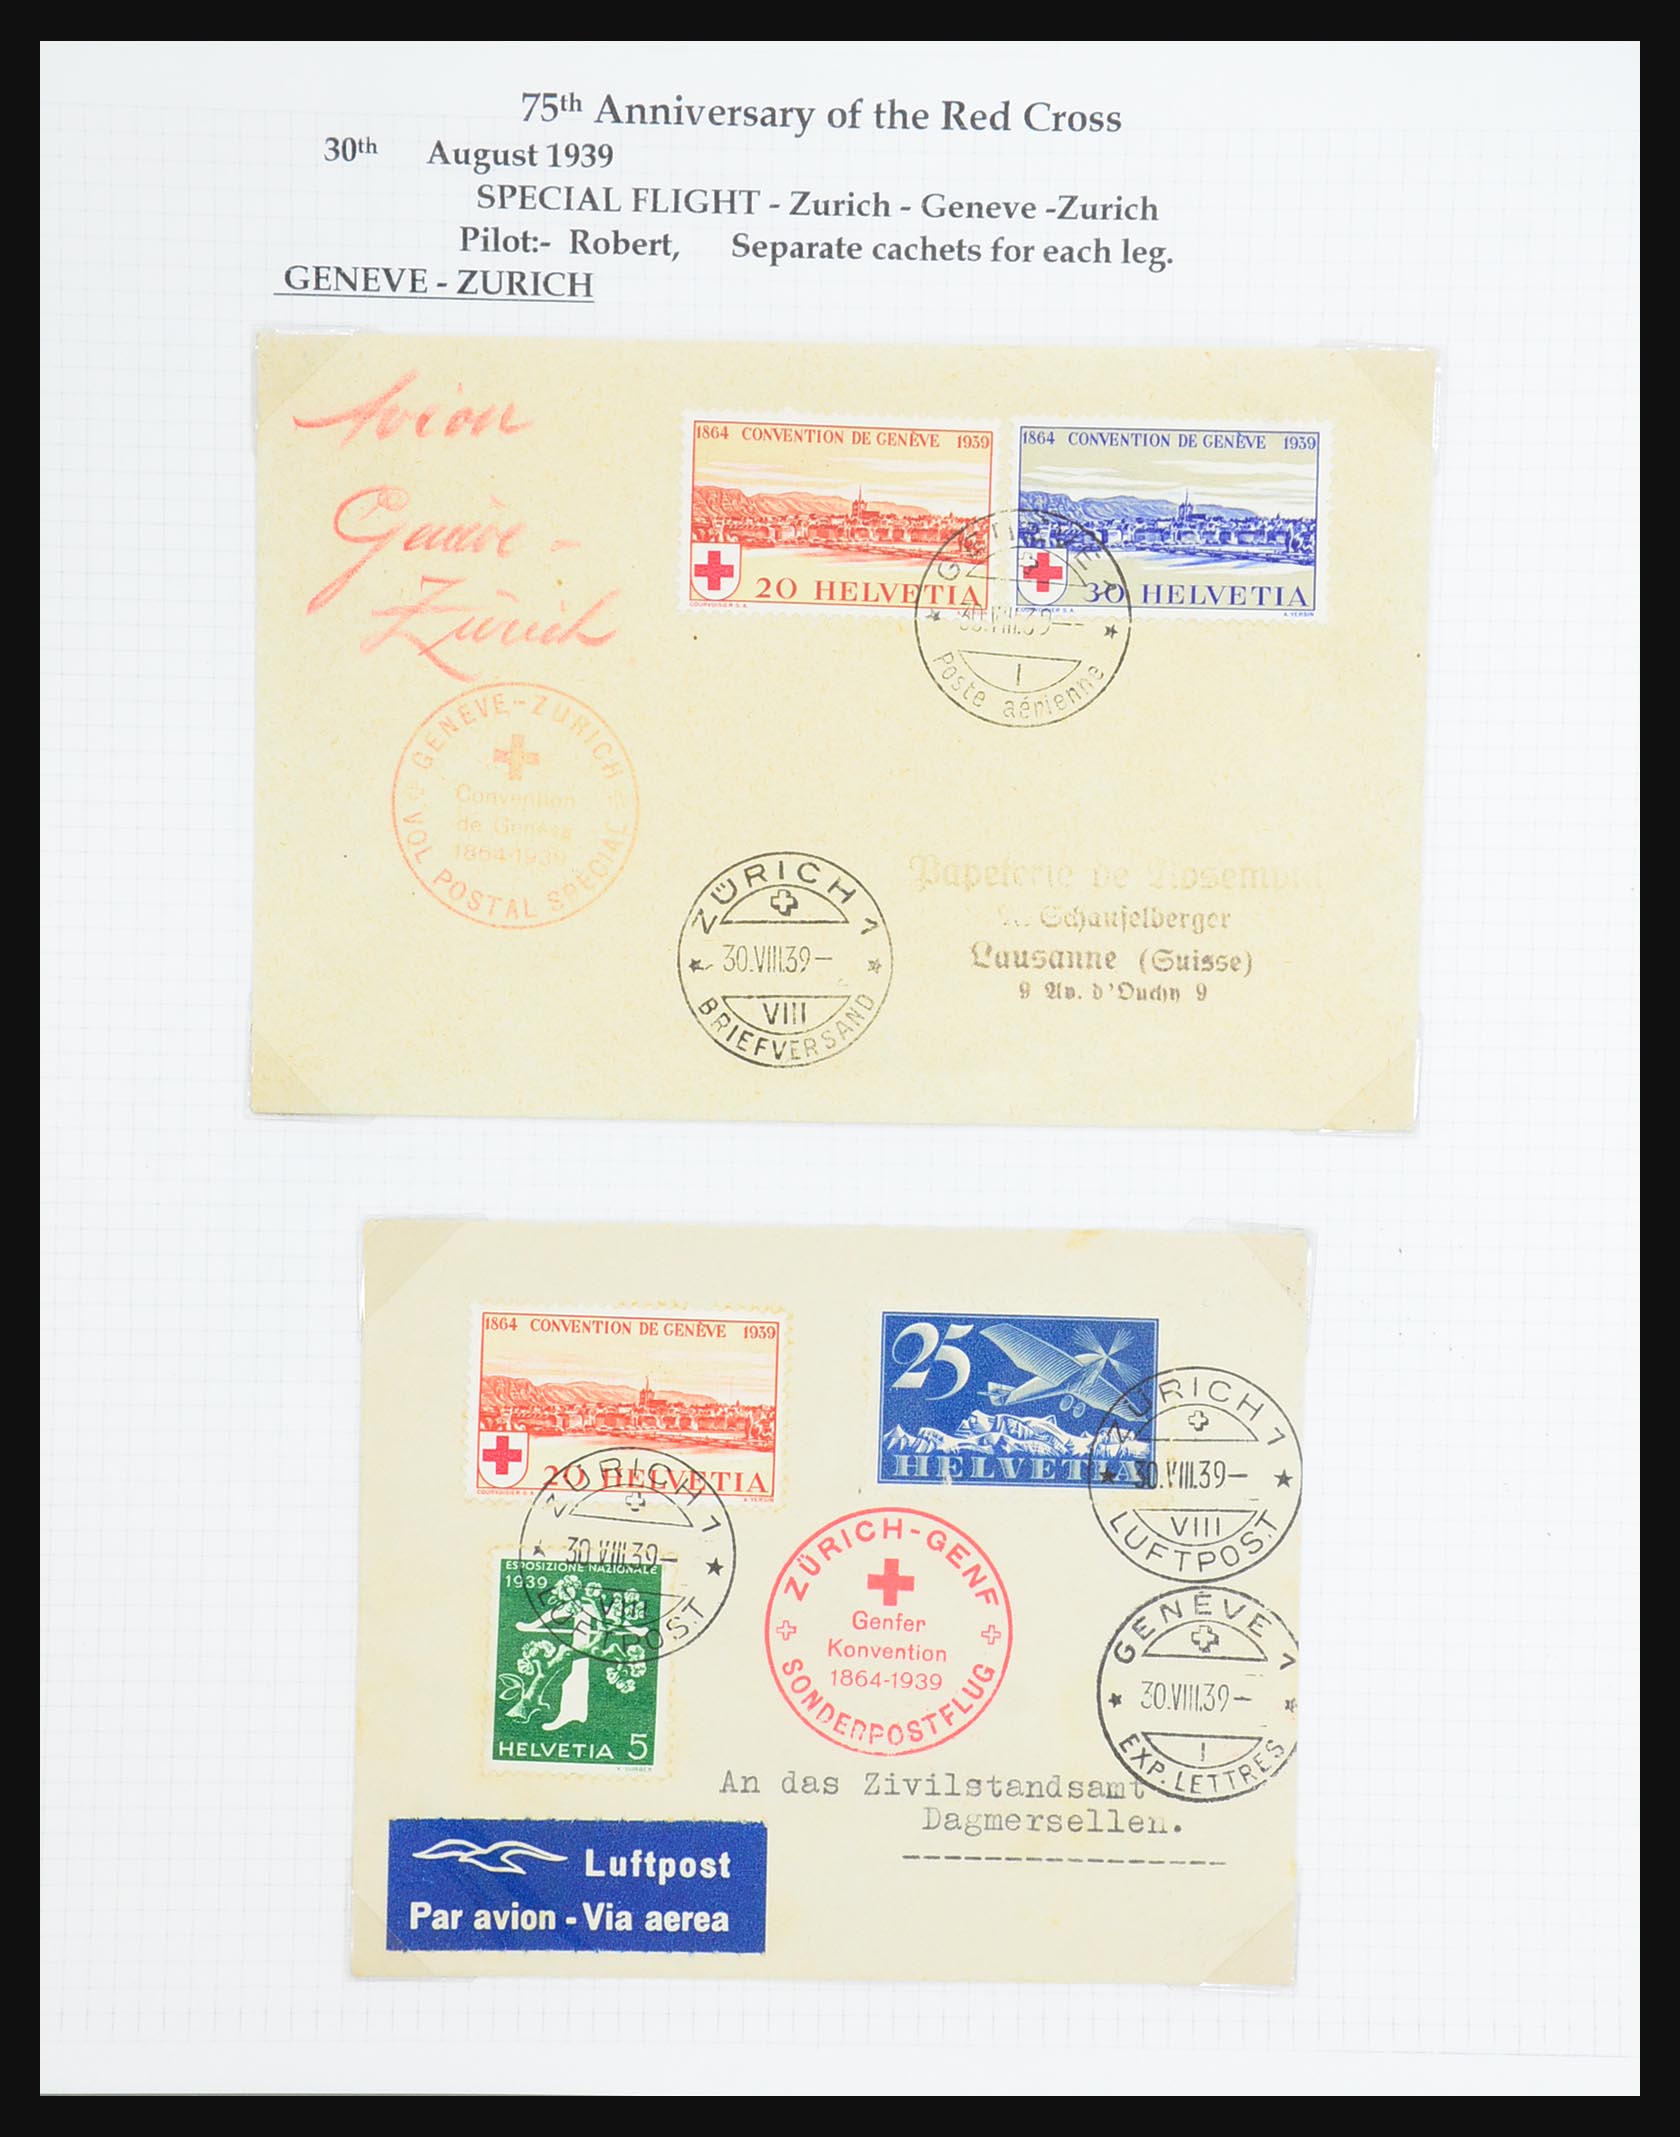 31444 104 - 31444 Switzerland airmail covers 1922-1946.